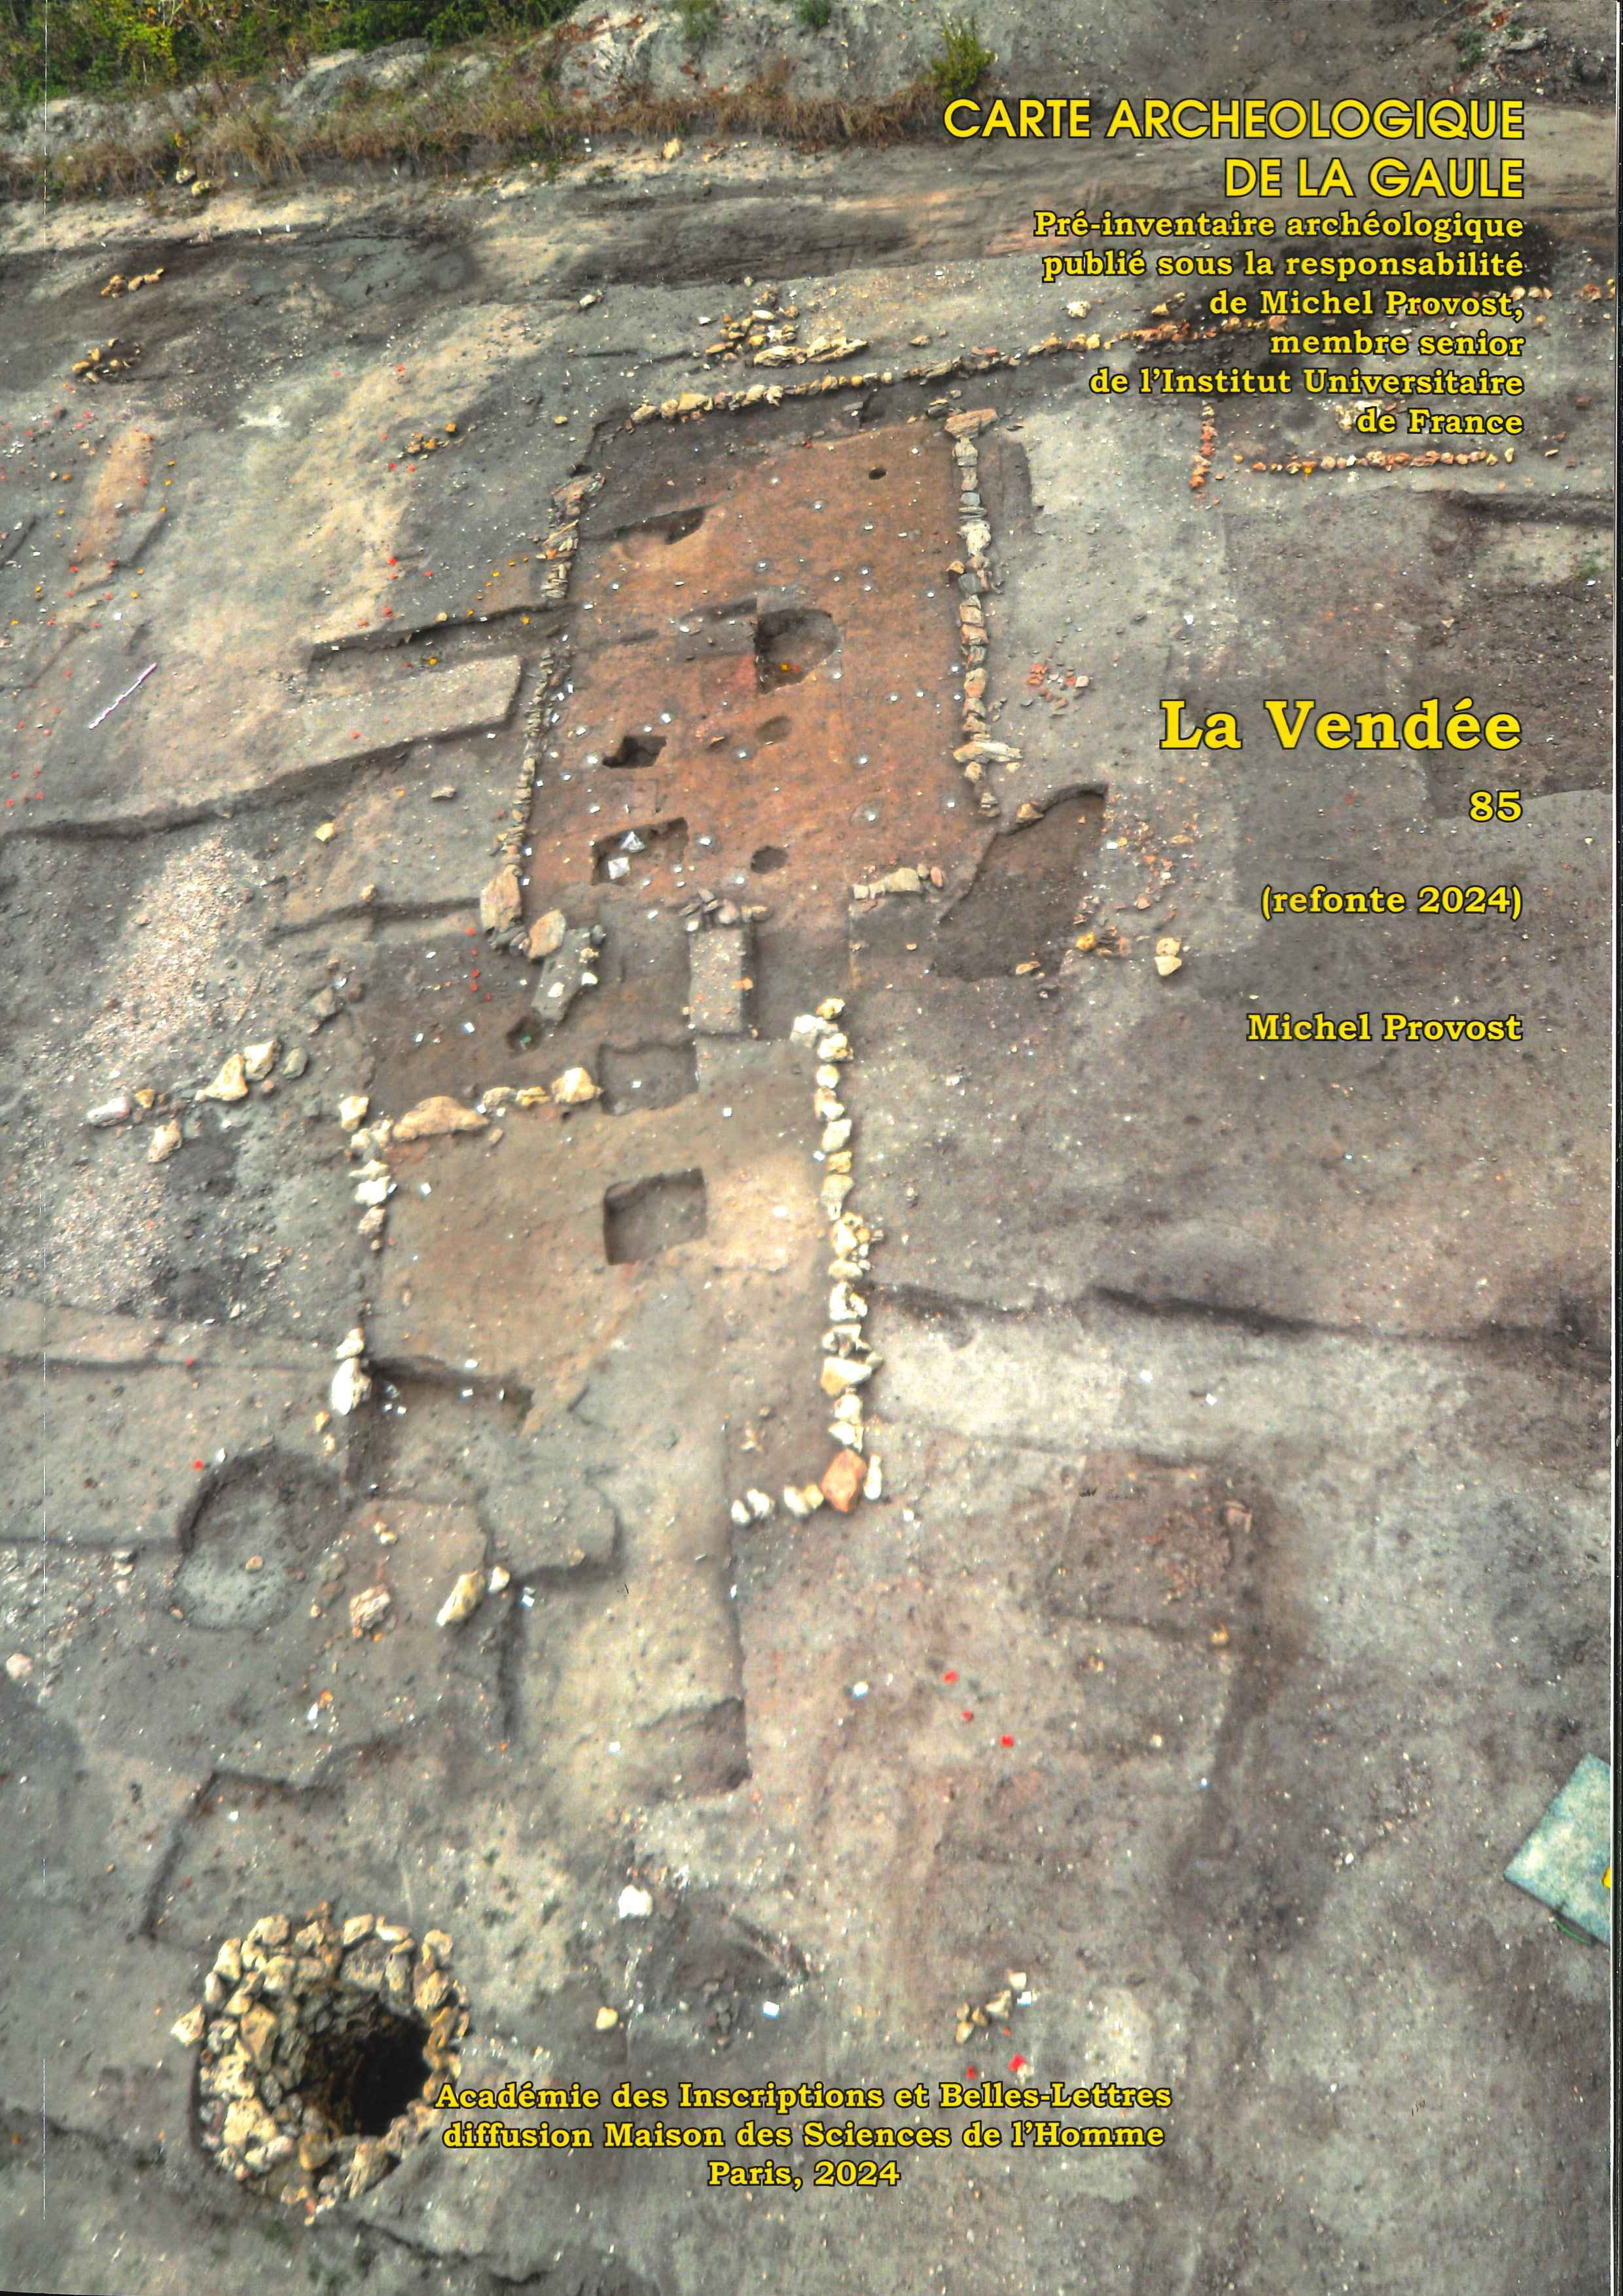 85, La Vendée (refonte 2024), 520 p. de M. Provost.